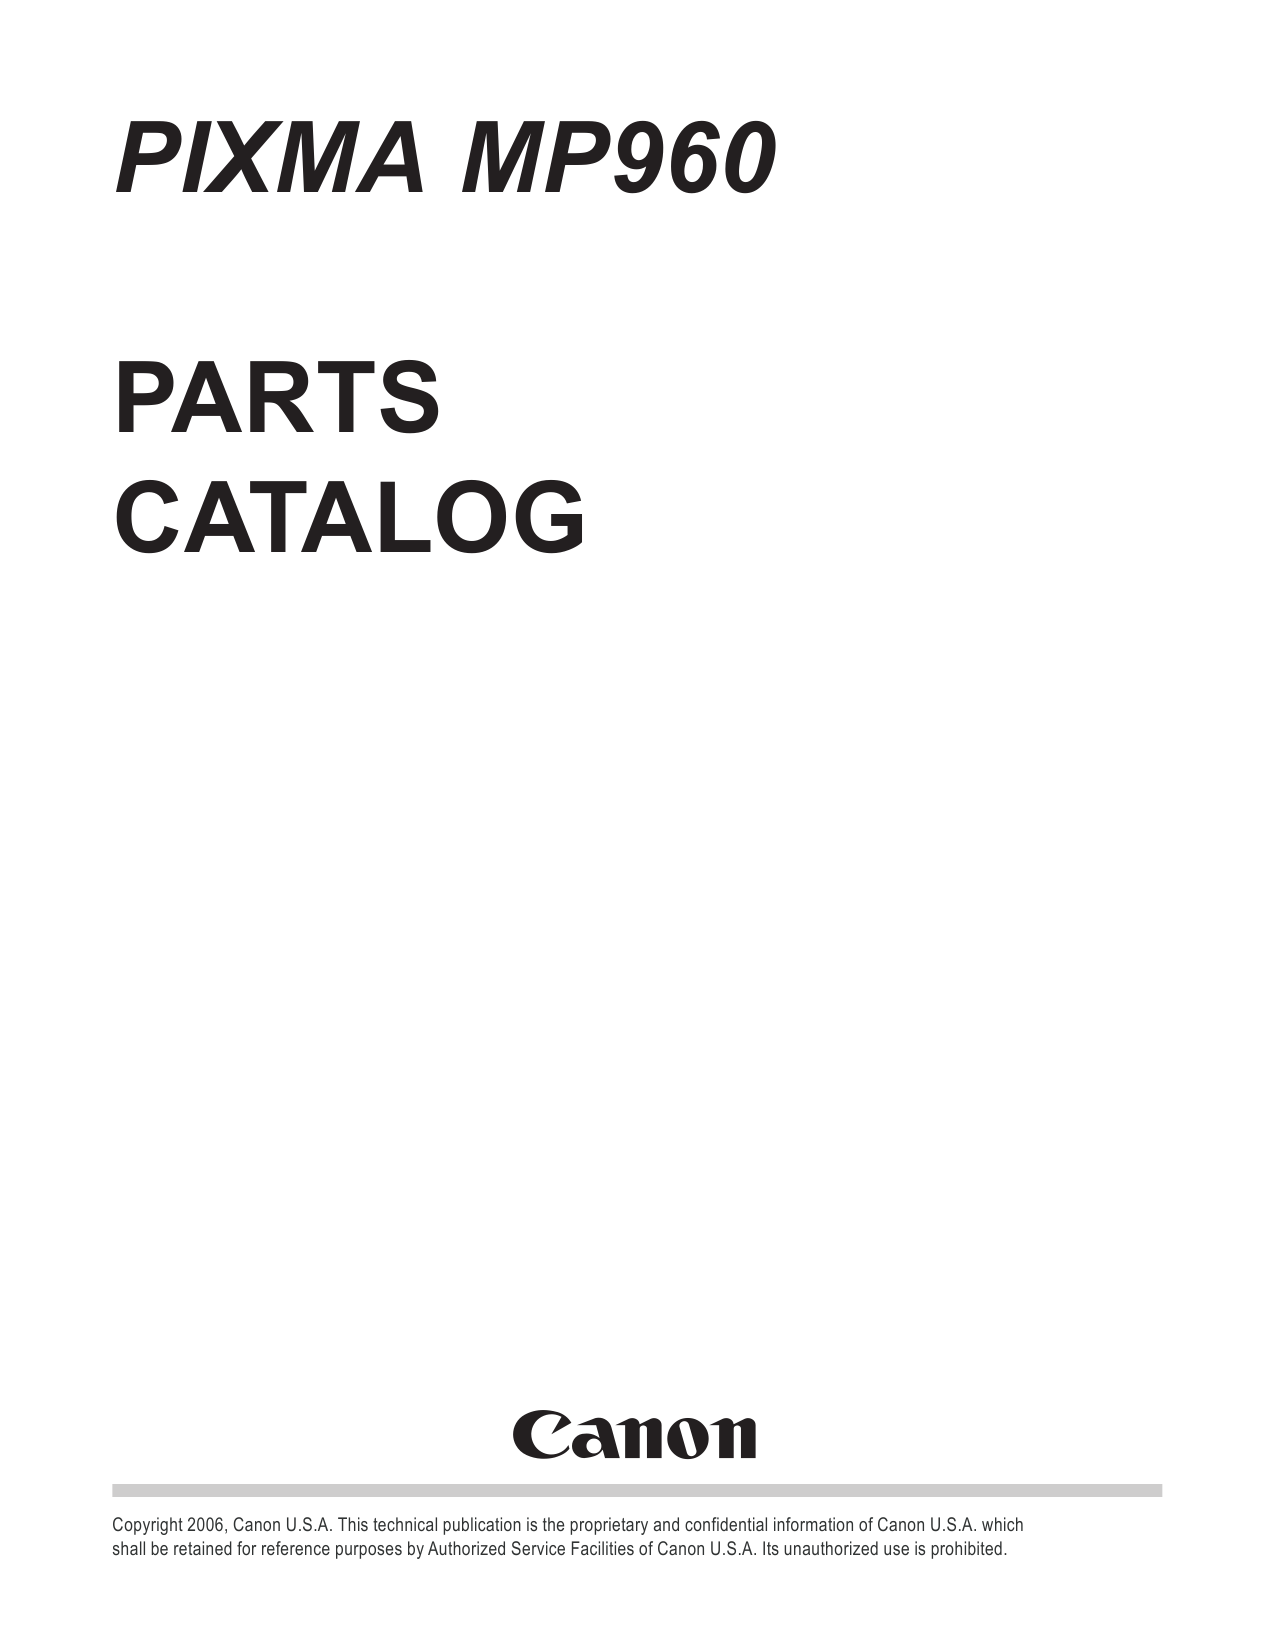 Canon PIXMA MP960 Parts Catalog-1